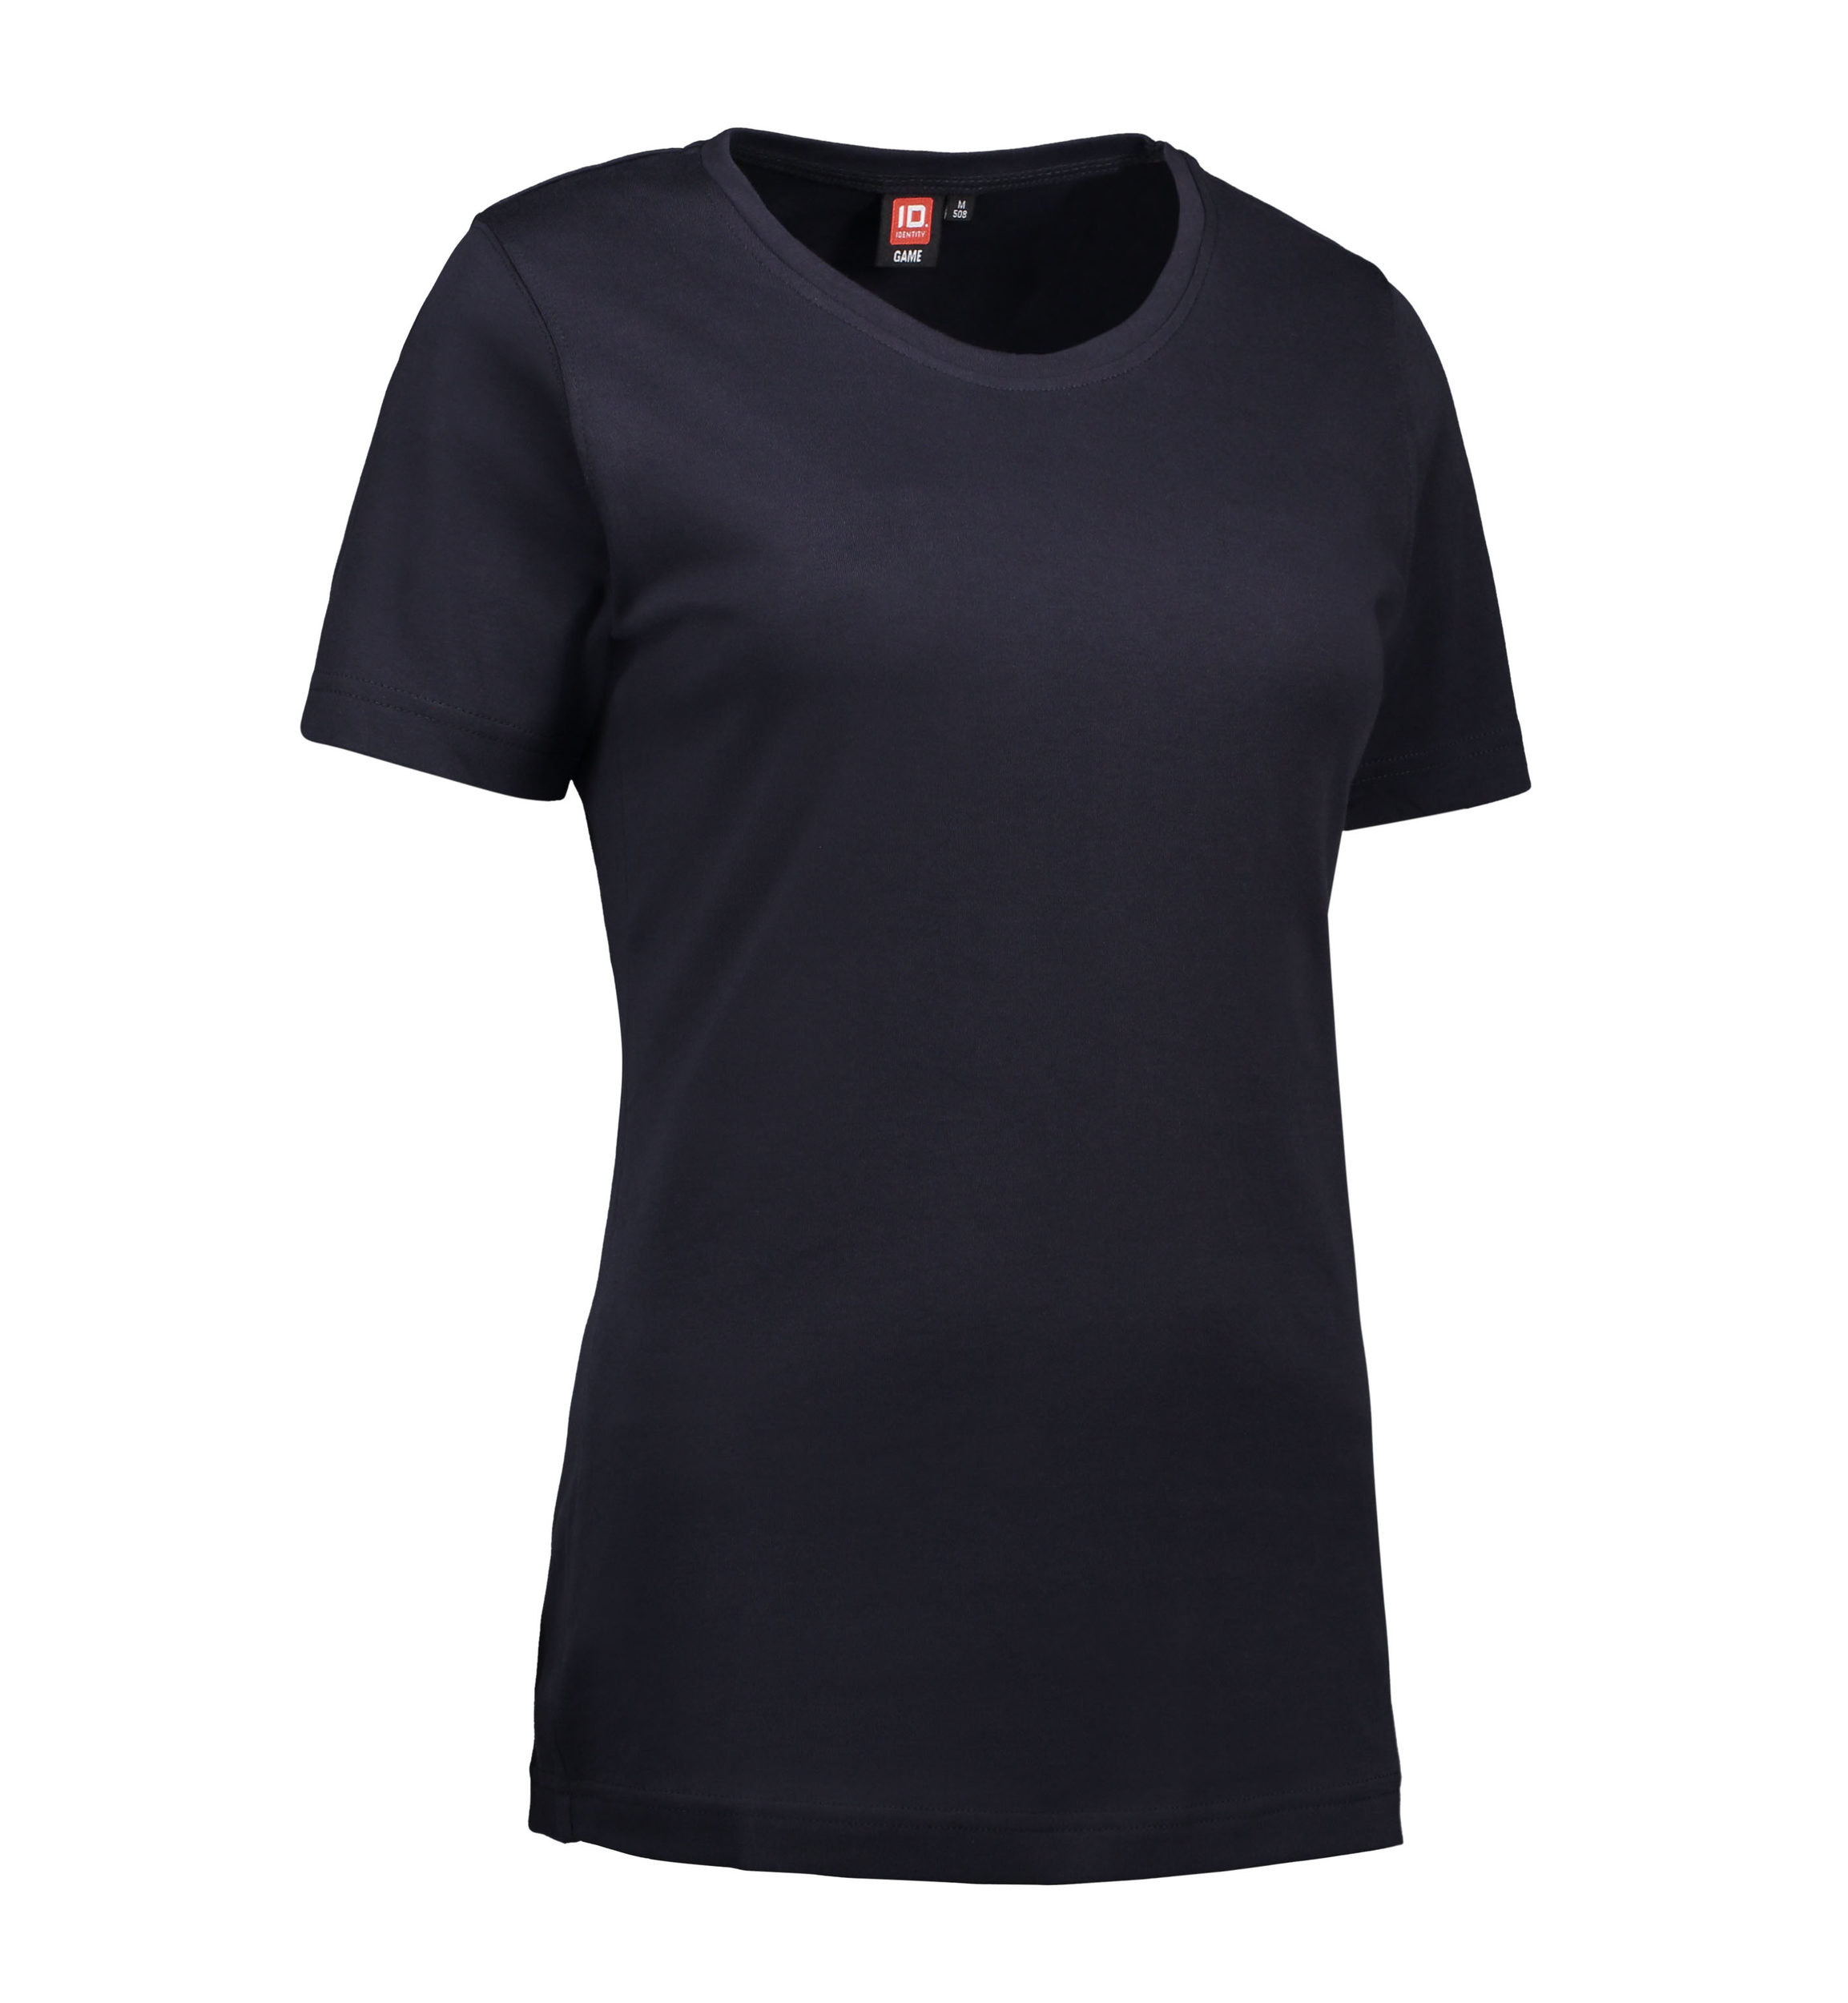 Billede af Navy t-shirt med rund hals til damer - 3XL hos Sygeplejebutikken.dk